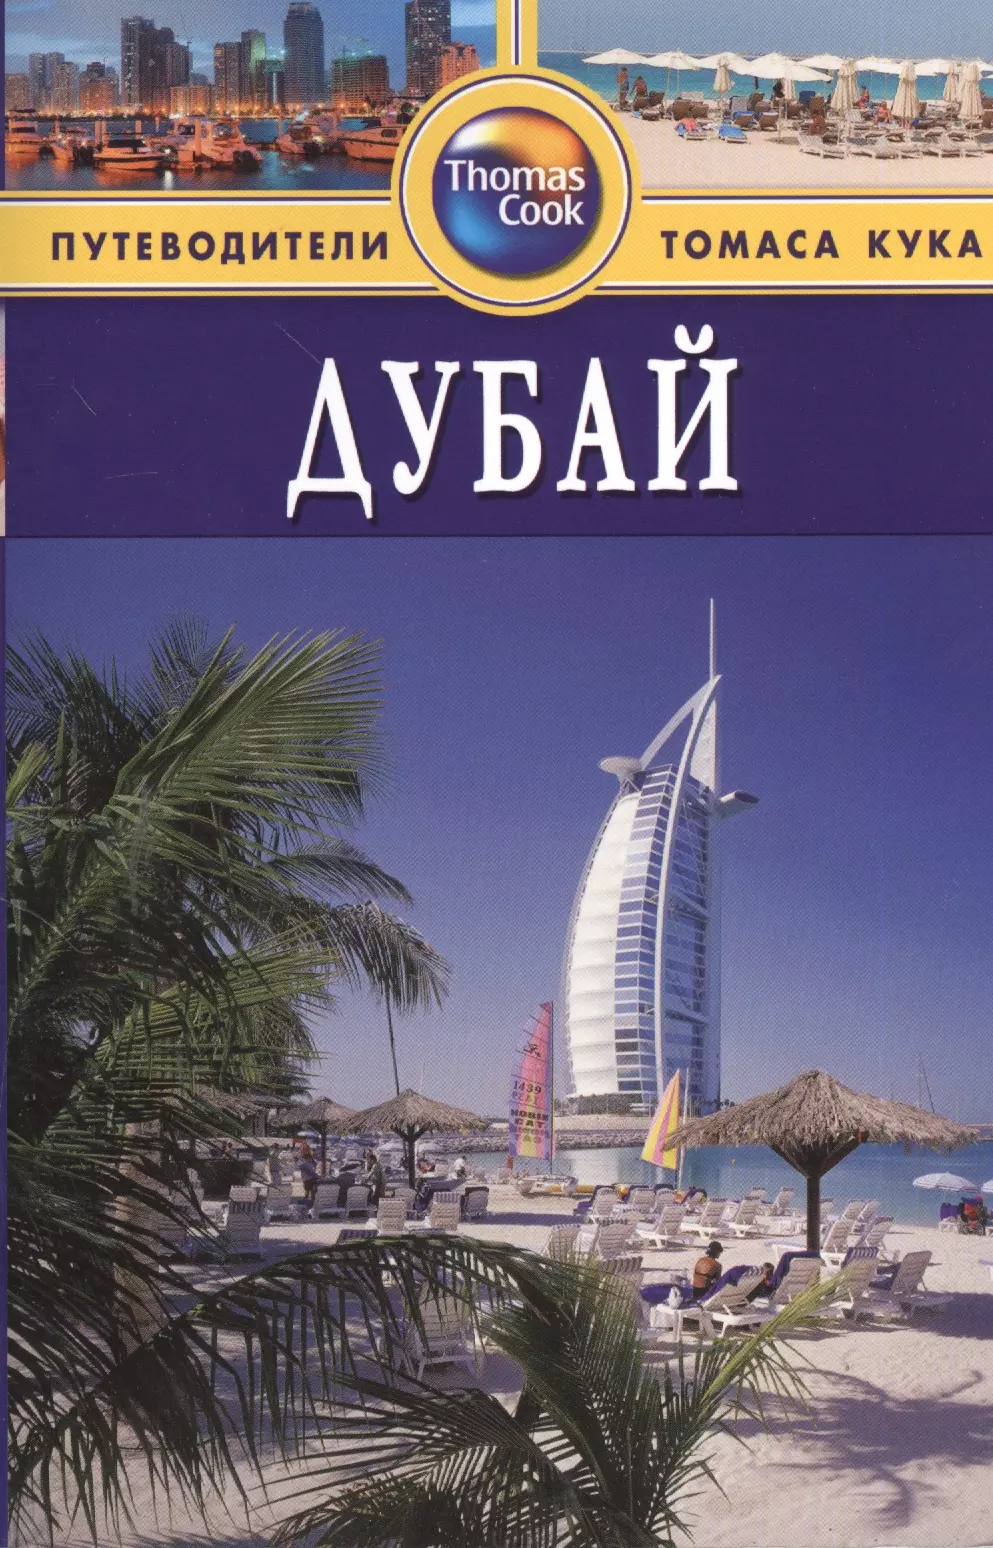 Дарк Диана Дубай : Путеводитель. - 2-е изд. перераб. и доп.